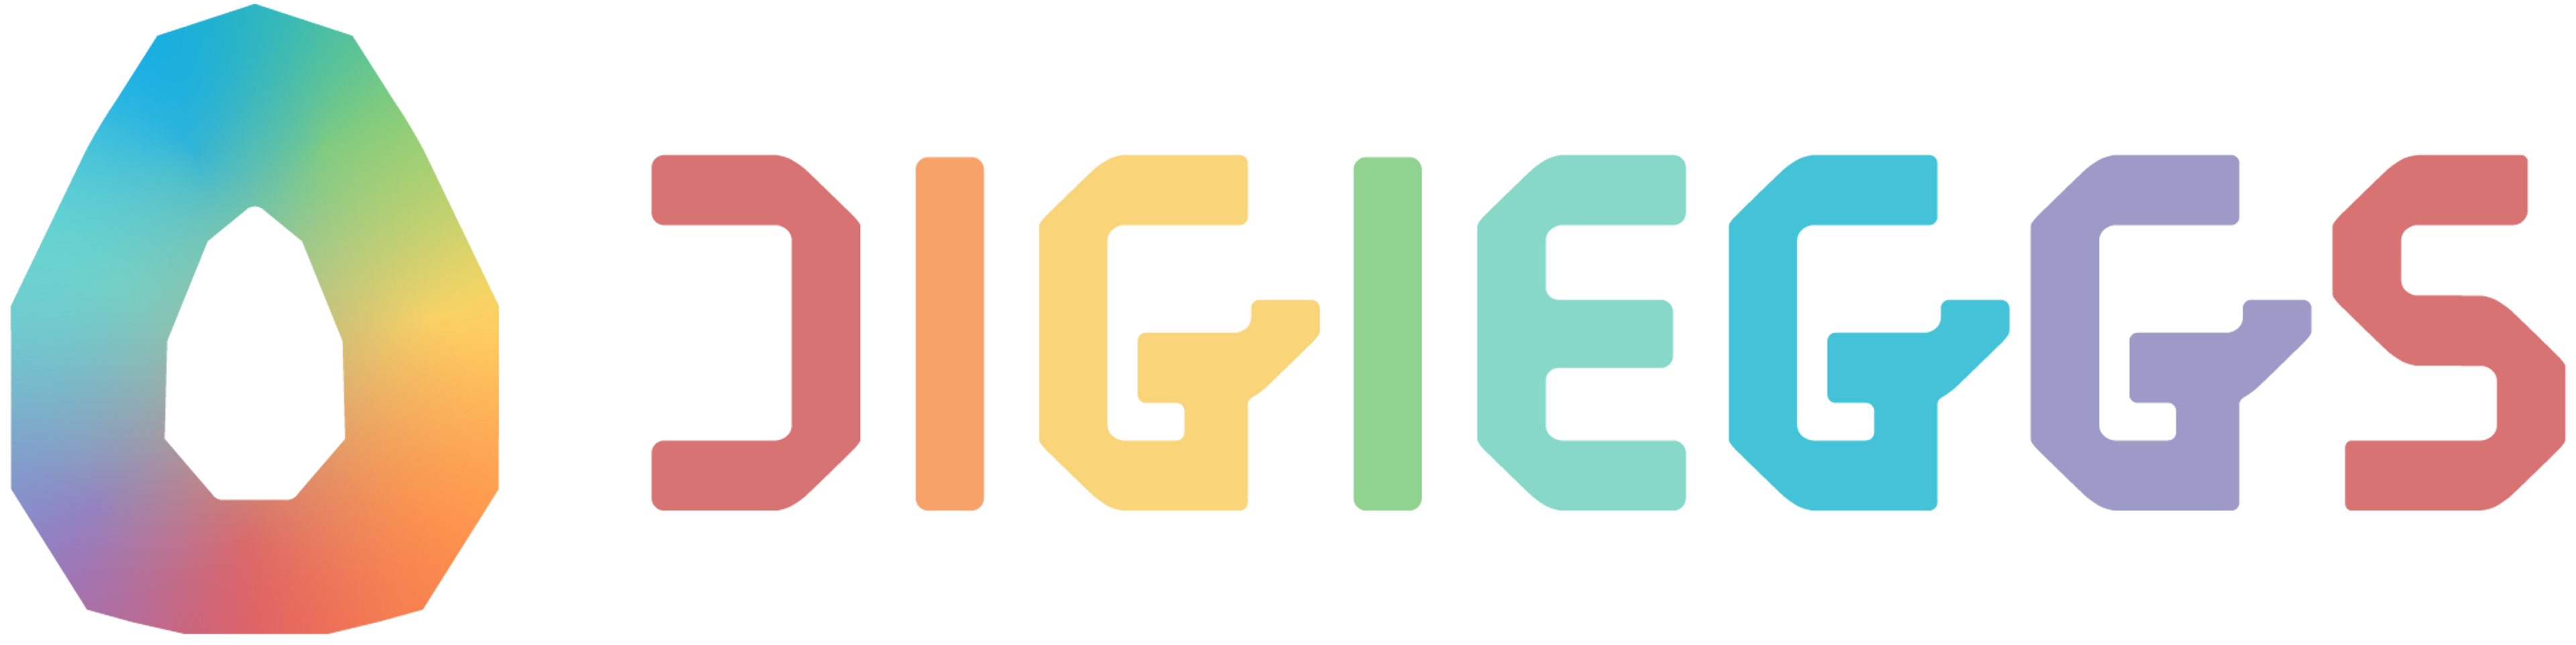 DIGIEGGS logo